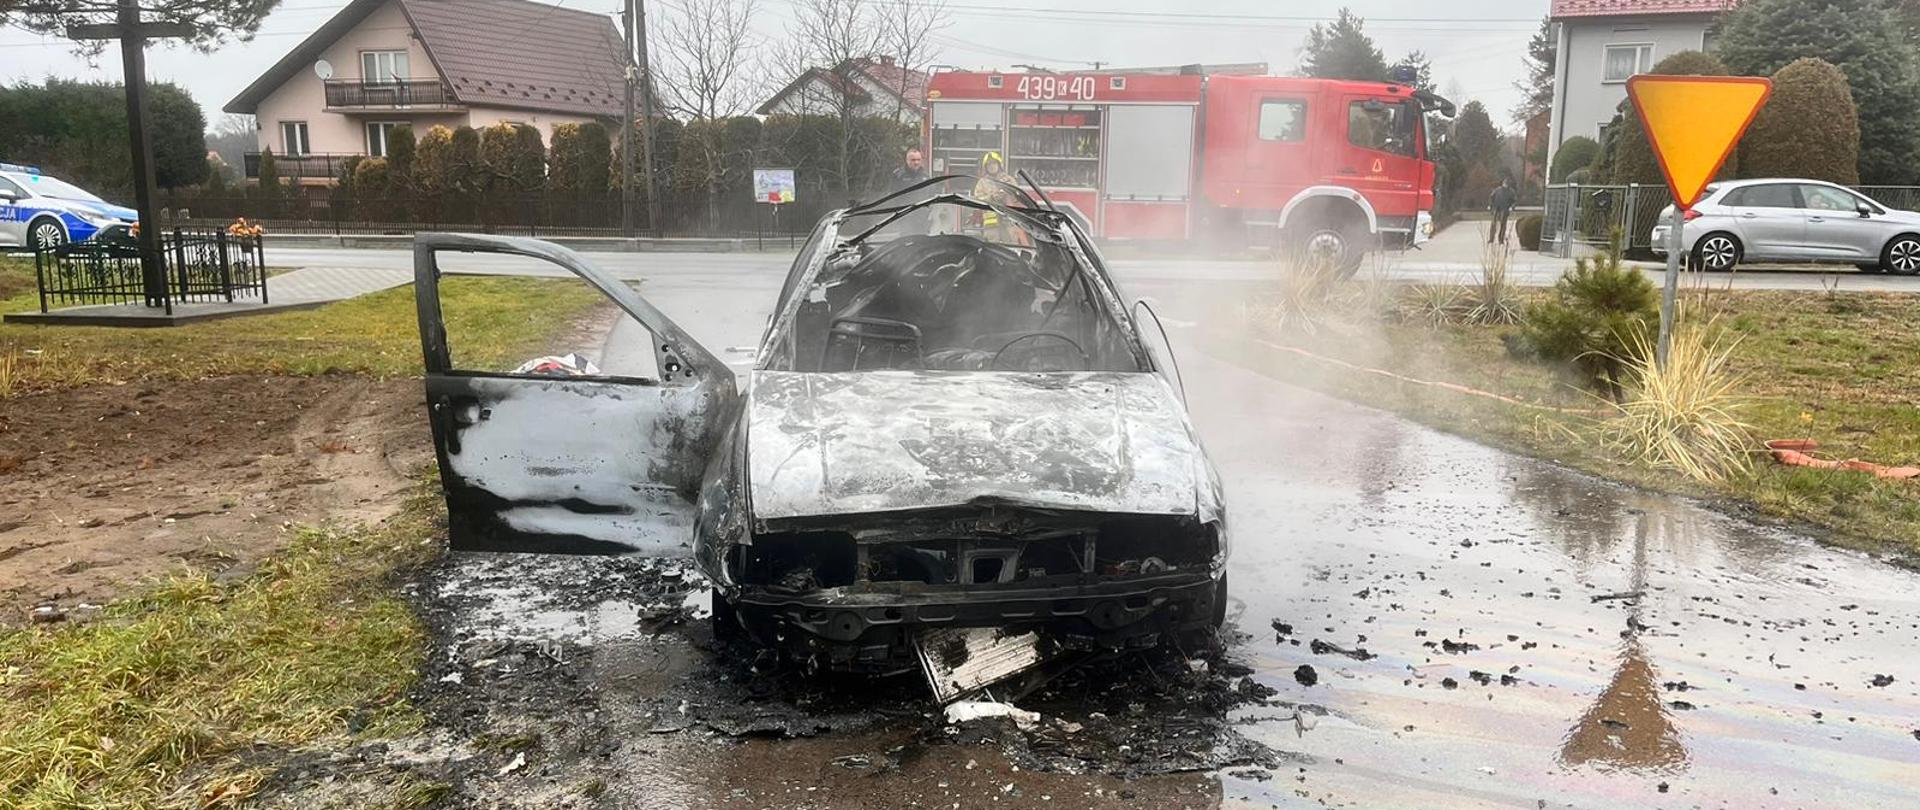 Na zdjęciu widać spalony wrak pojazdu.